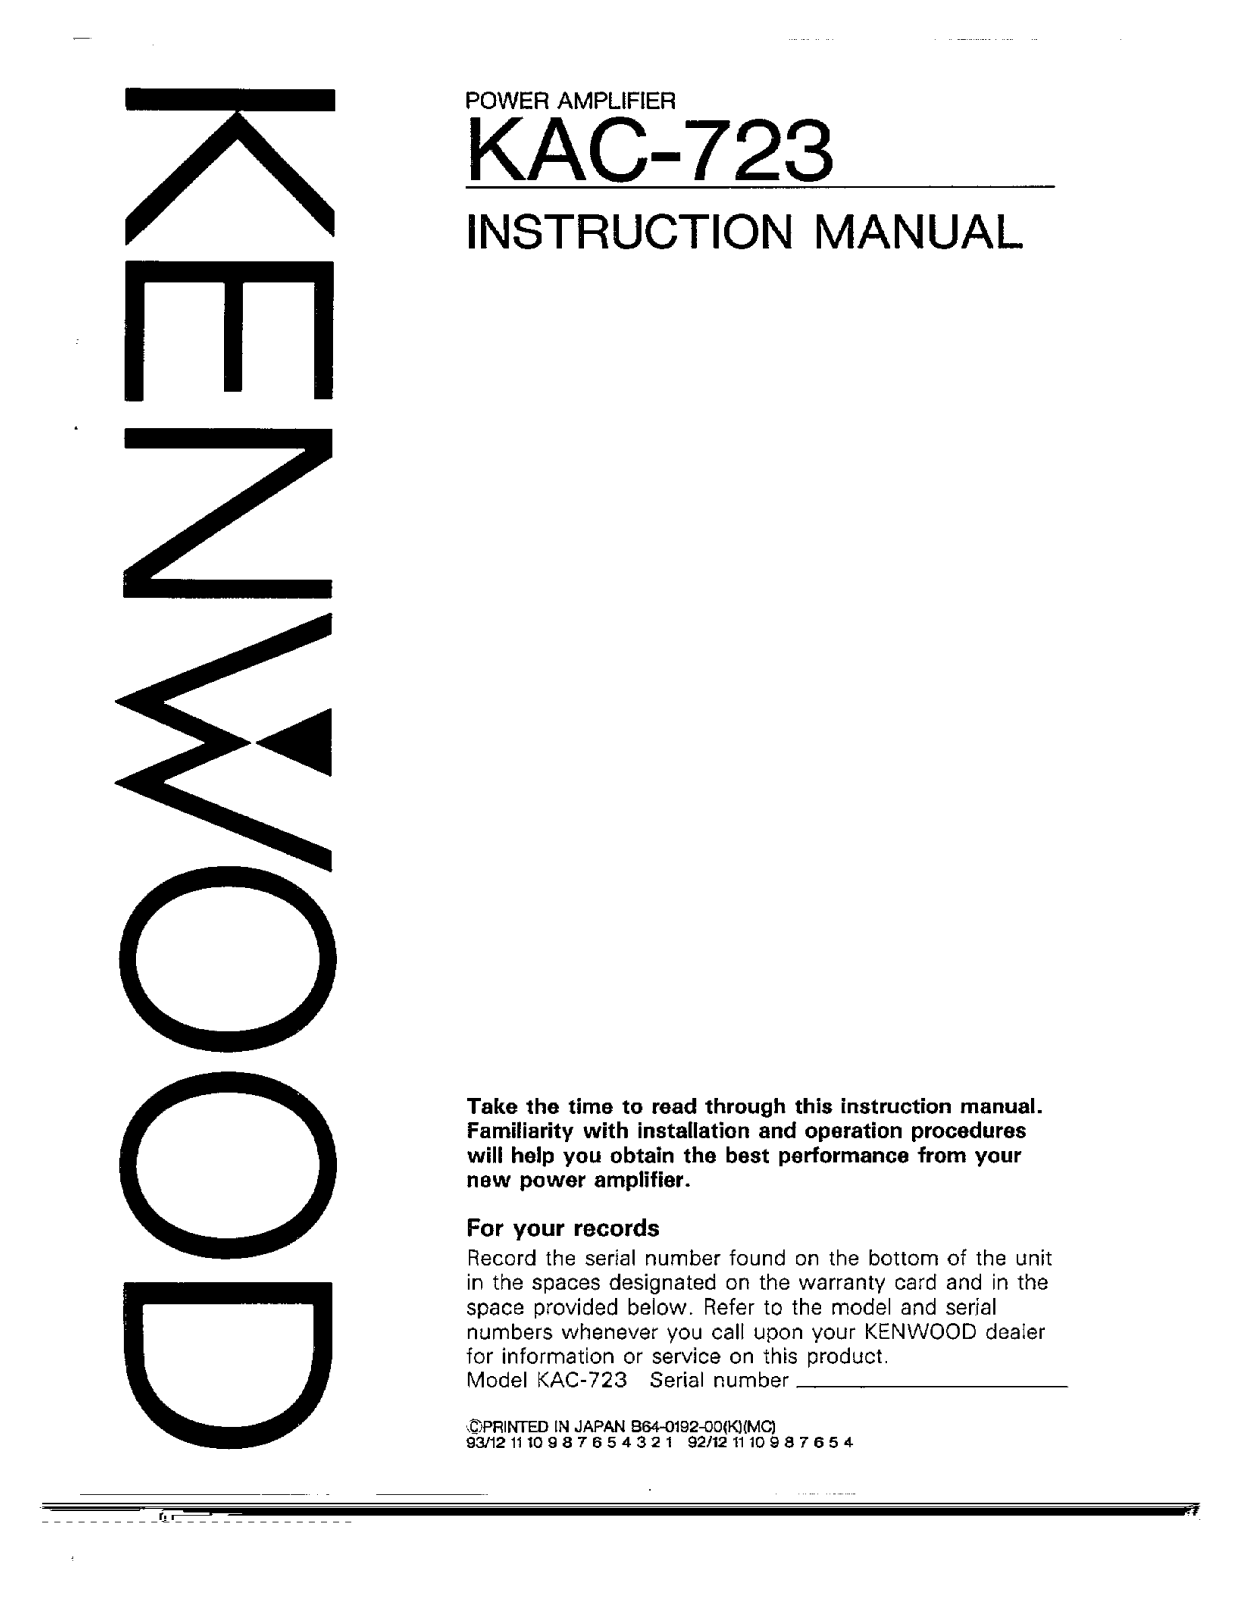 Kenwood KAC-723 Owner's Manual